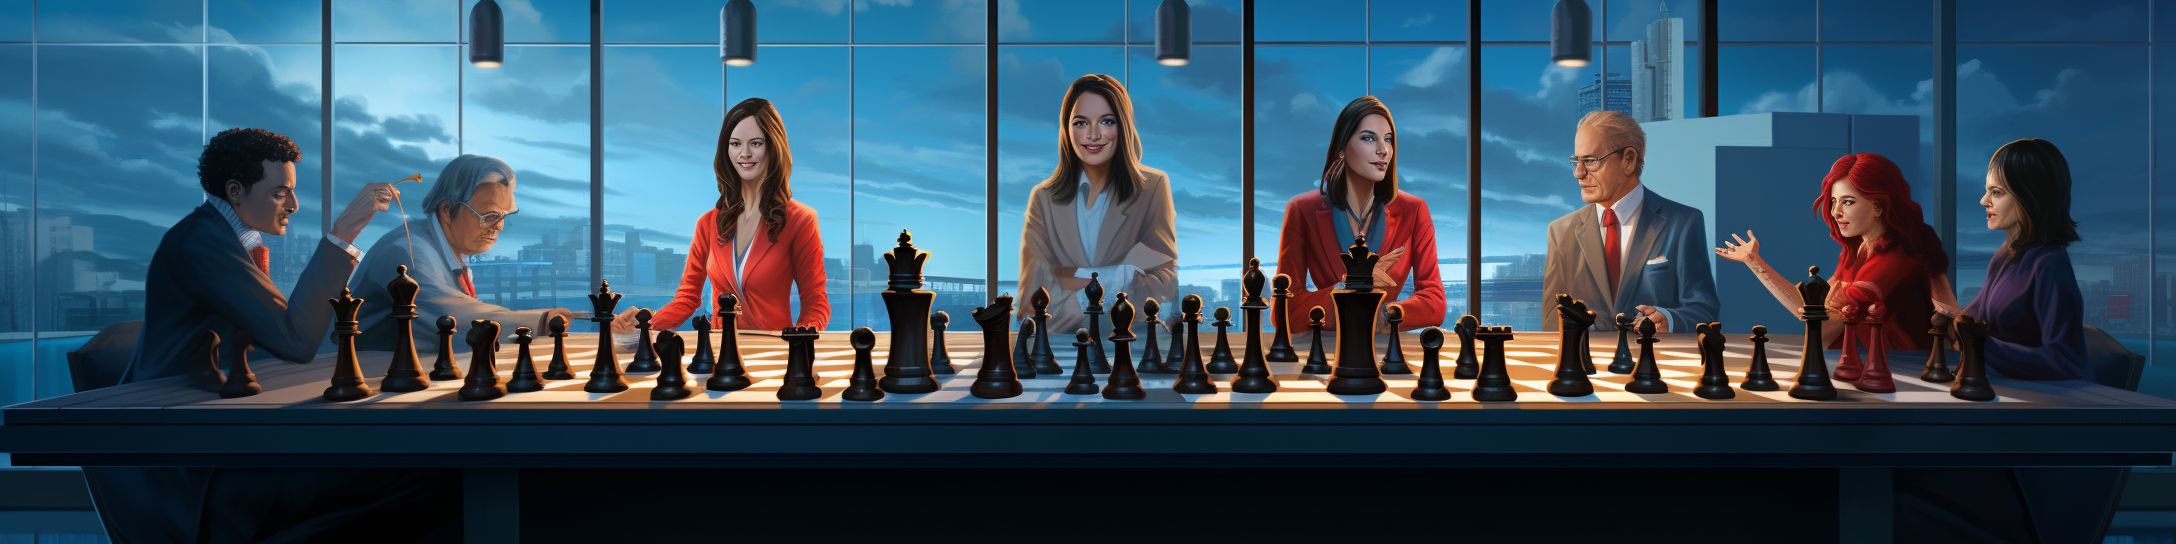 Les figures féminines marquantes dans l'enseignement des échecs